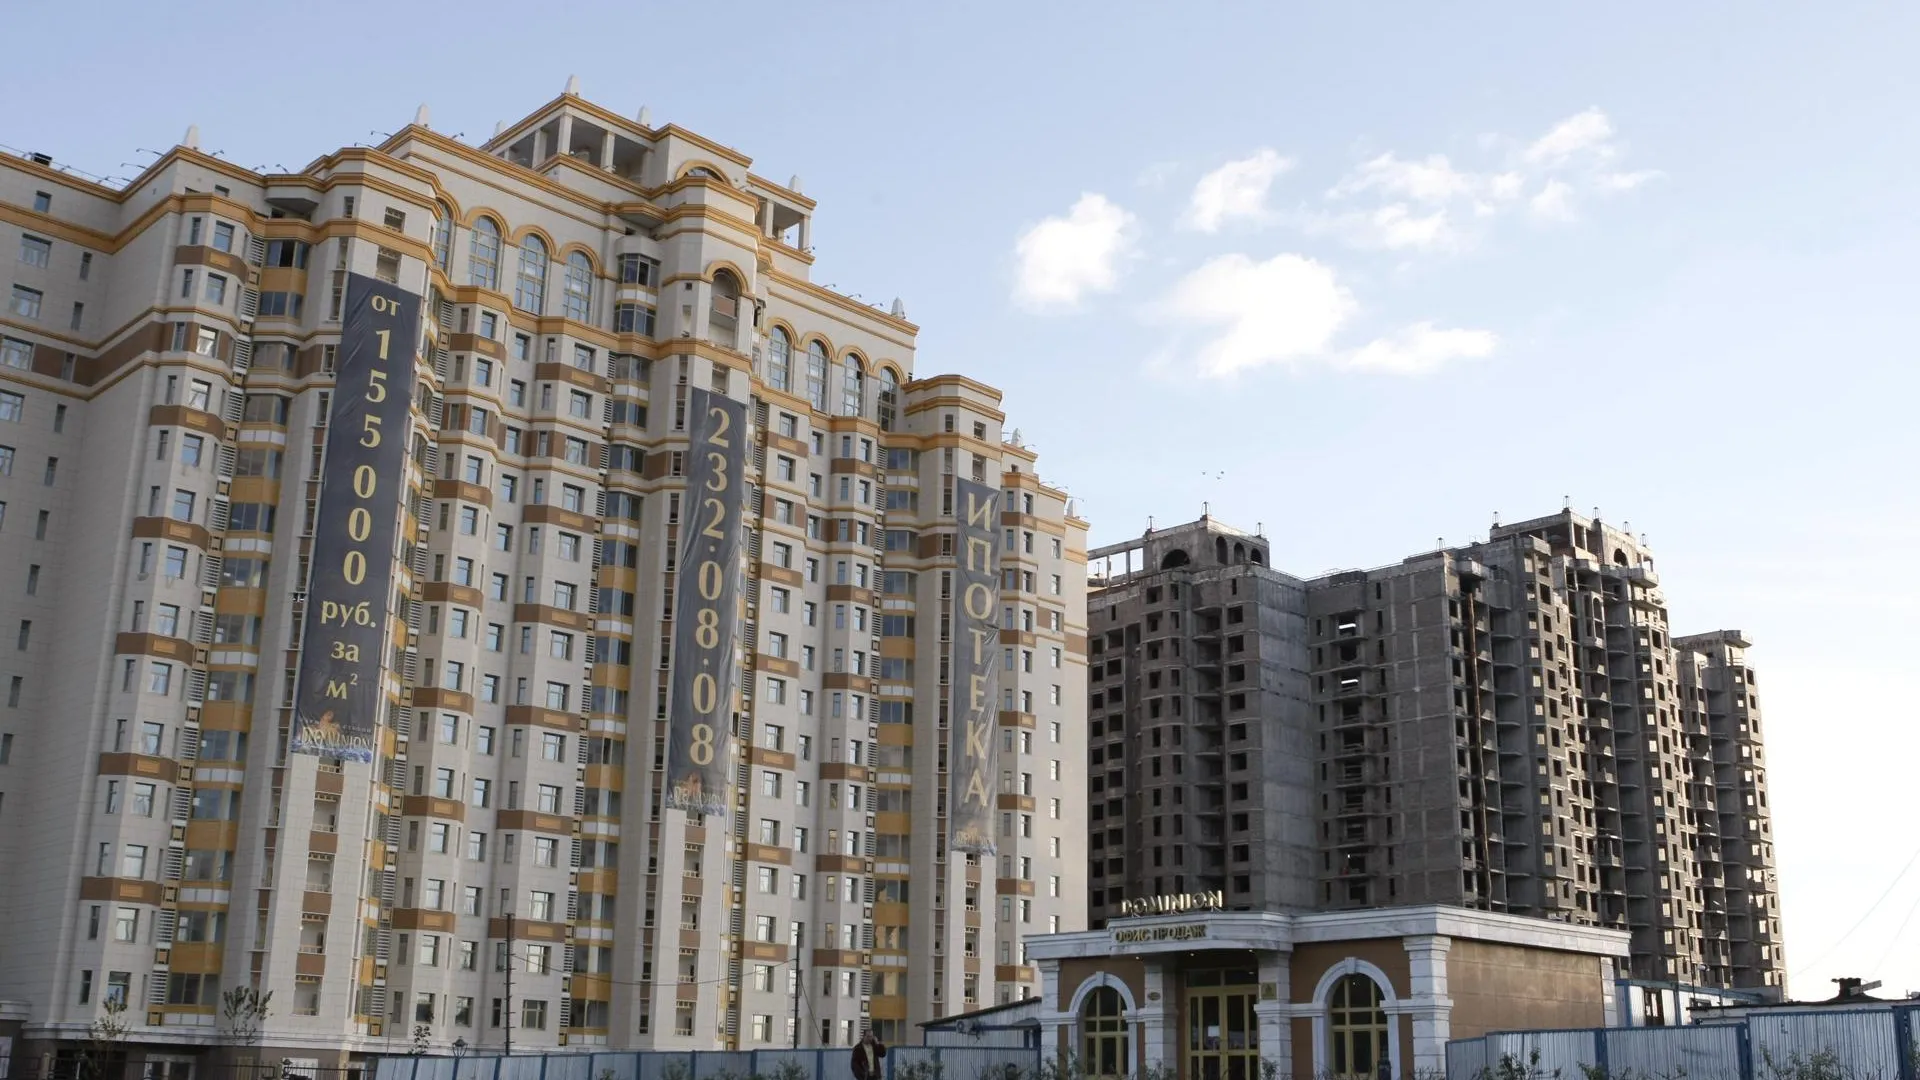 Команда О.М.А. предлагает запретить строительство жилья в Домодедово